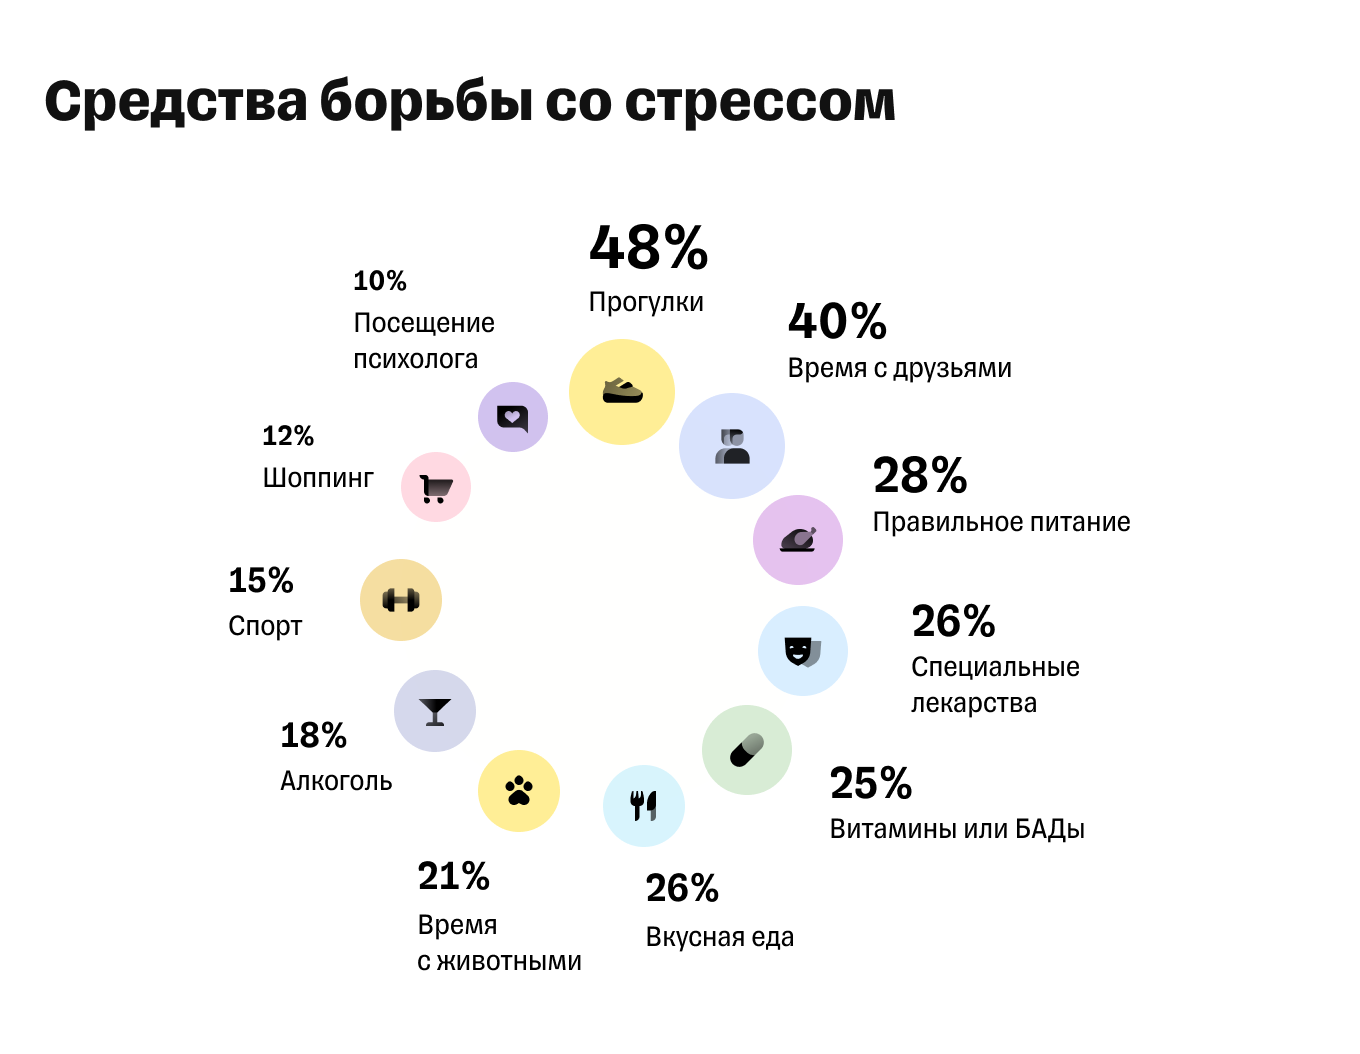 Способы борьбы со стрессом в России: статистика